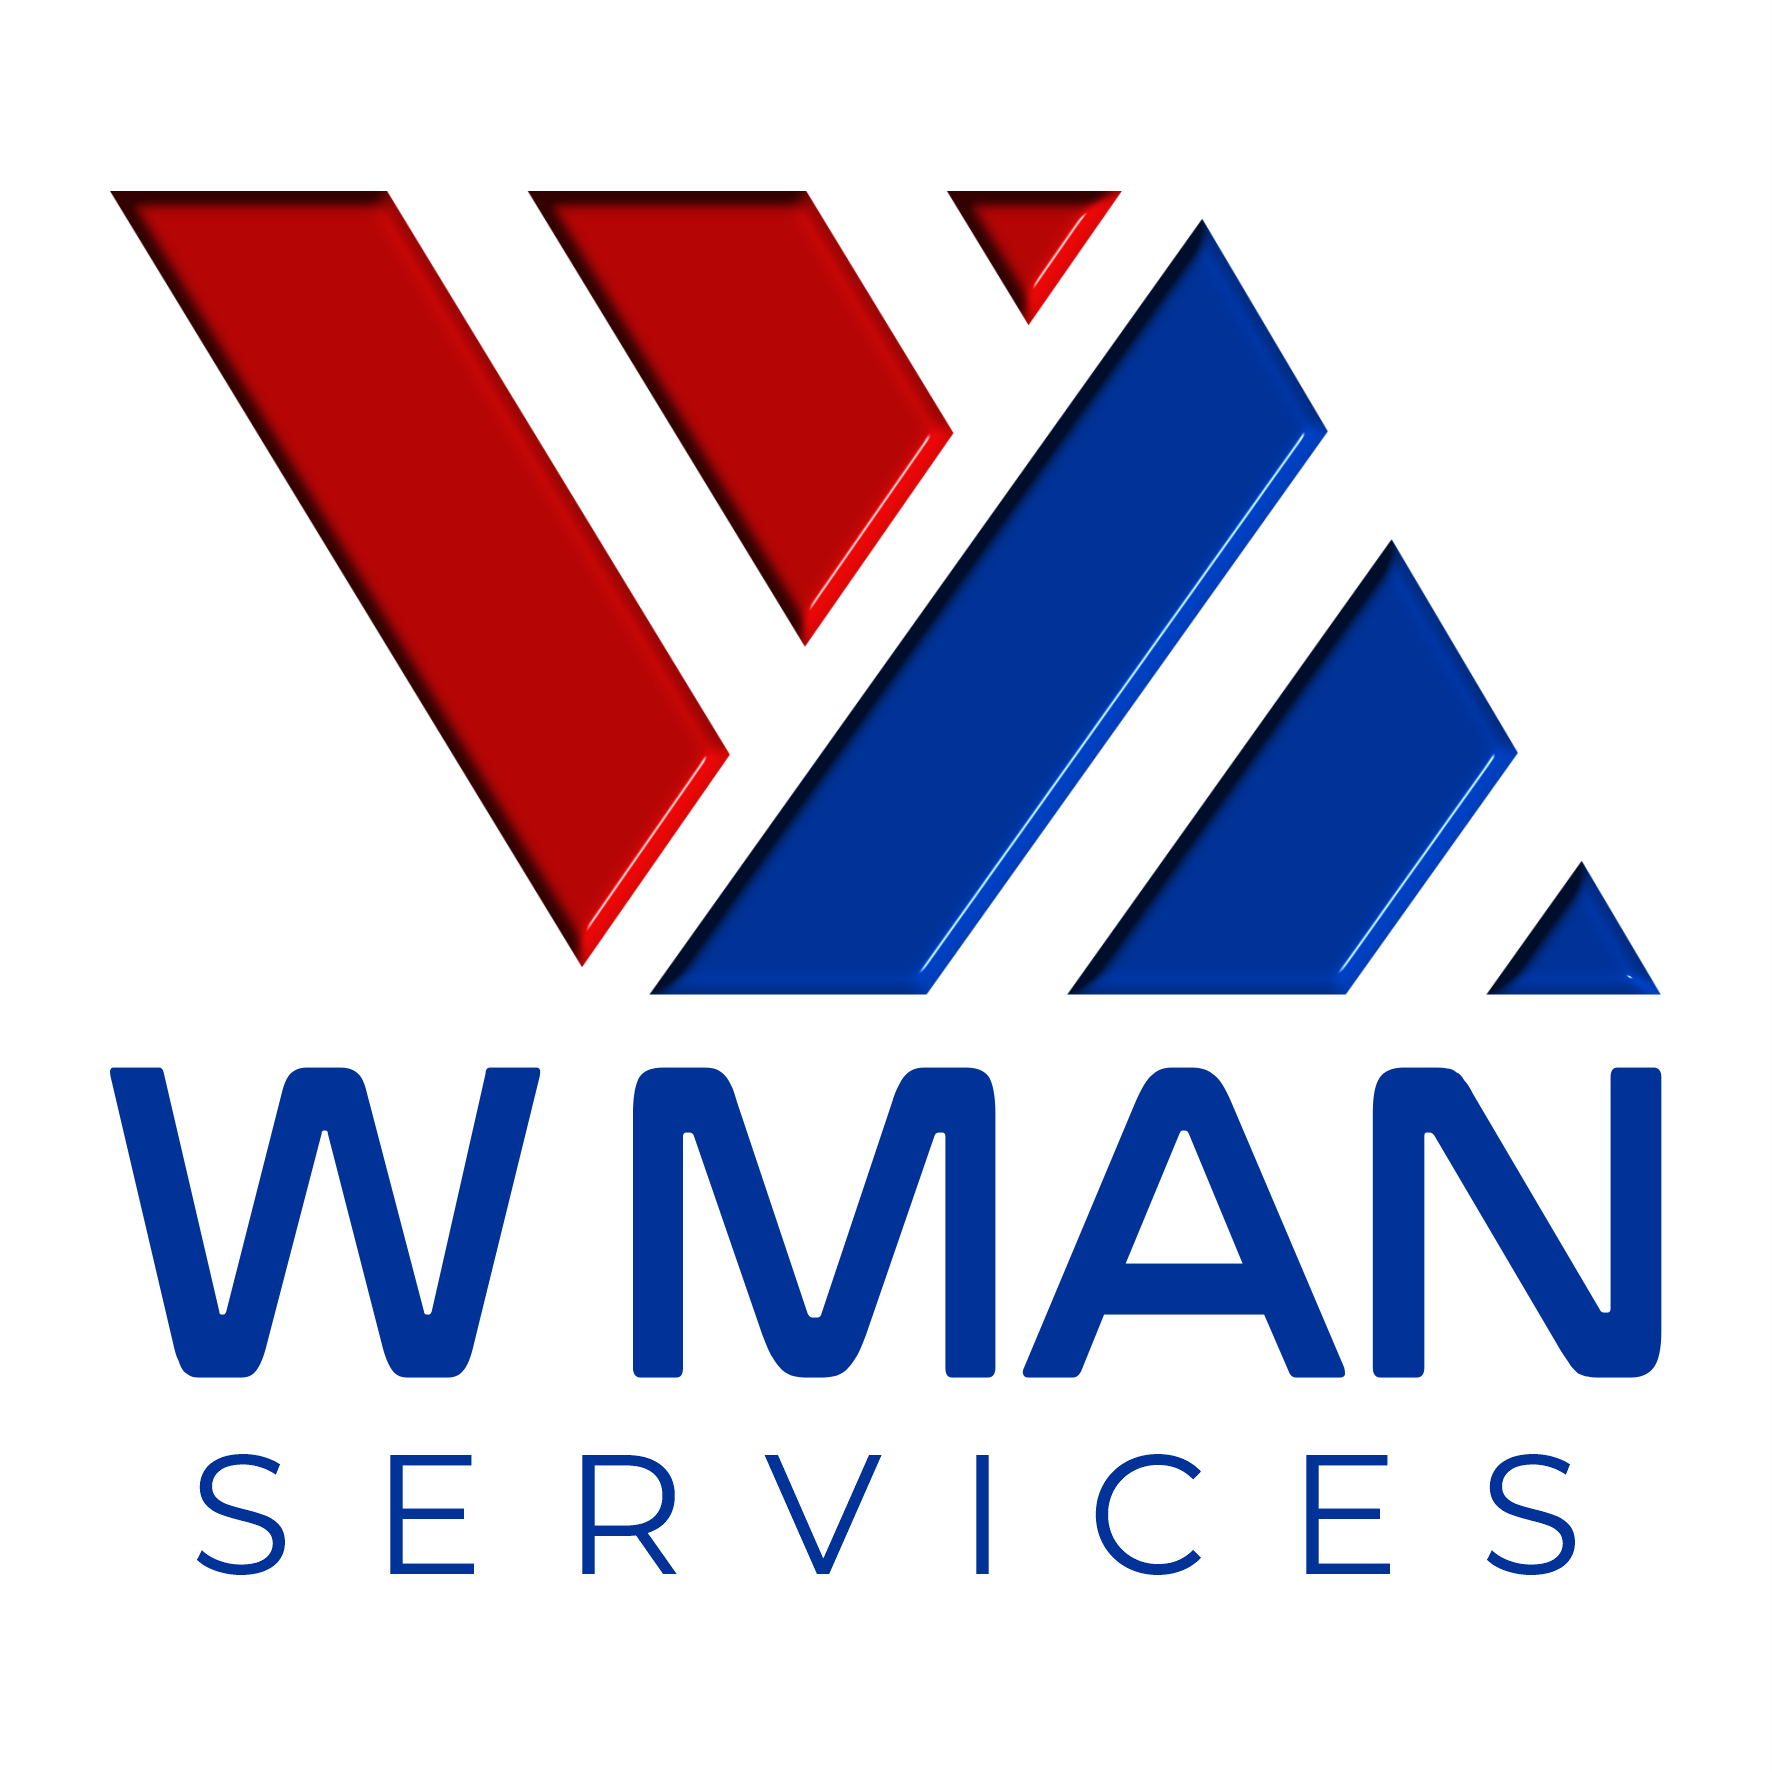 WMAN SERVICE